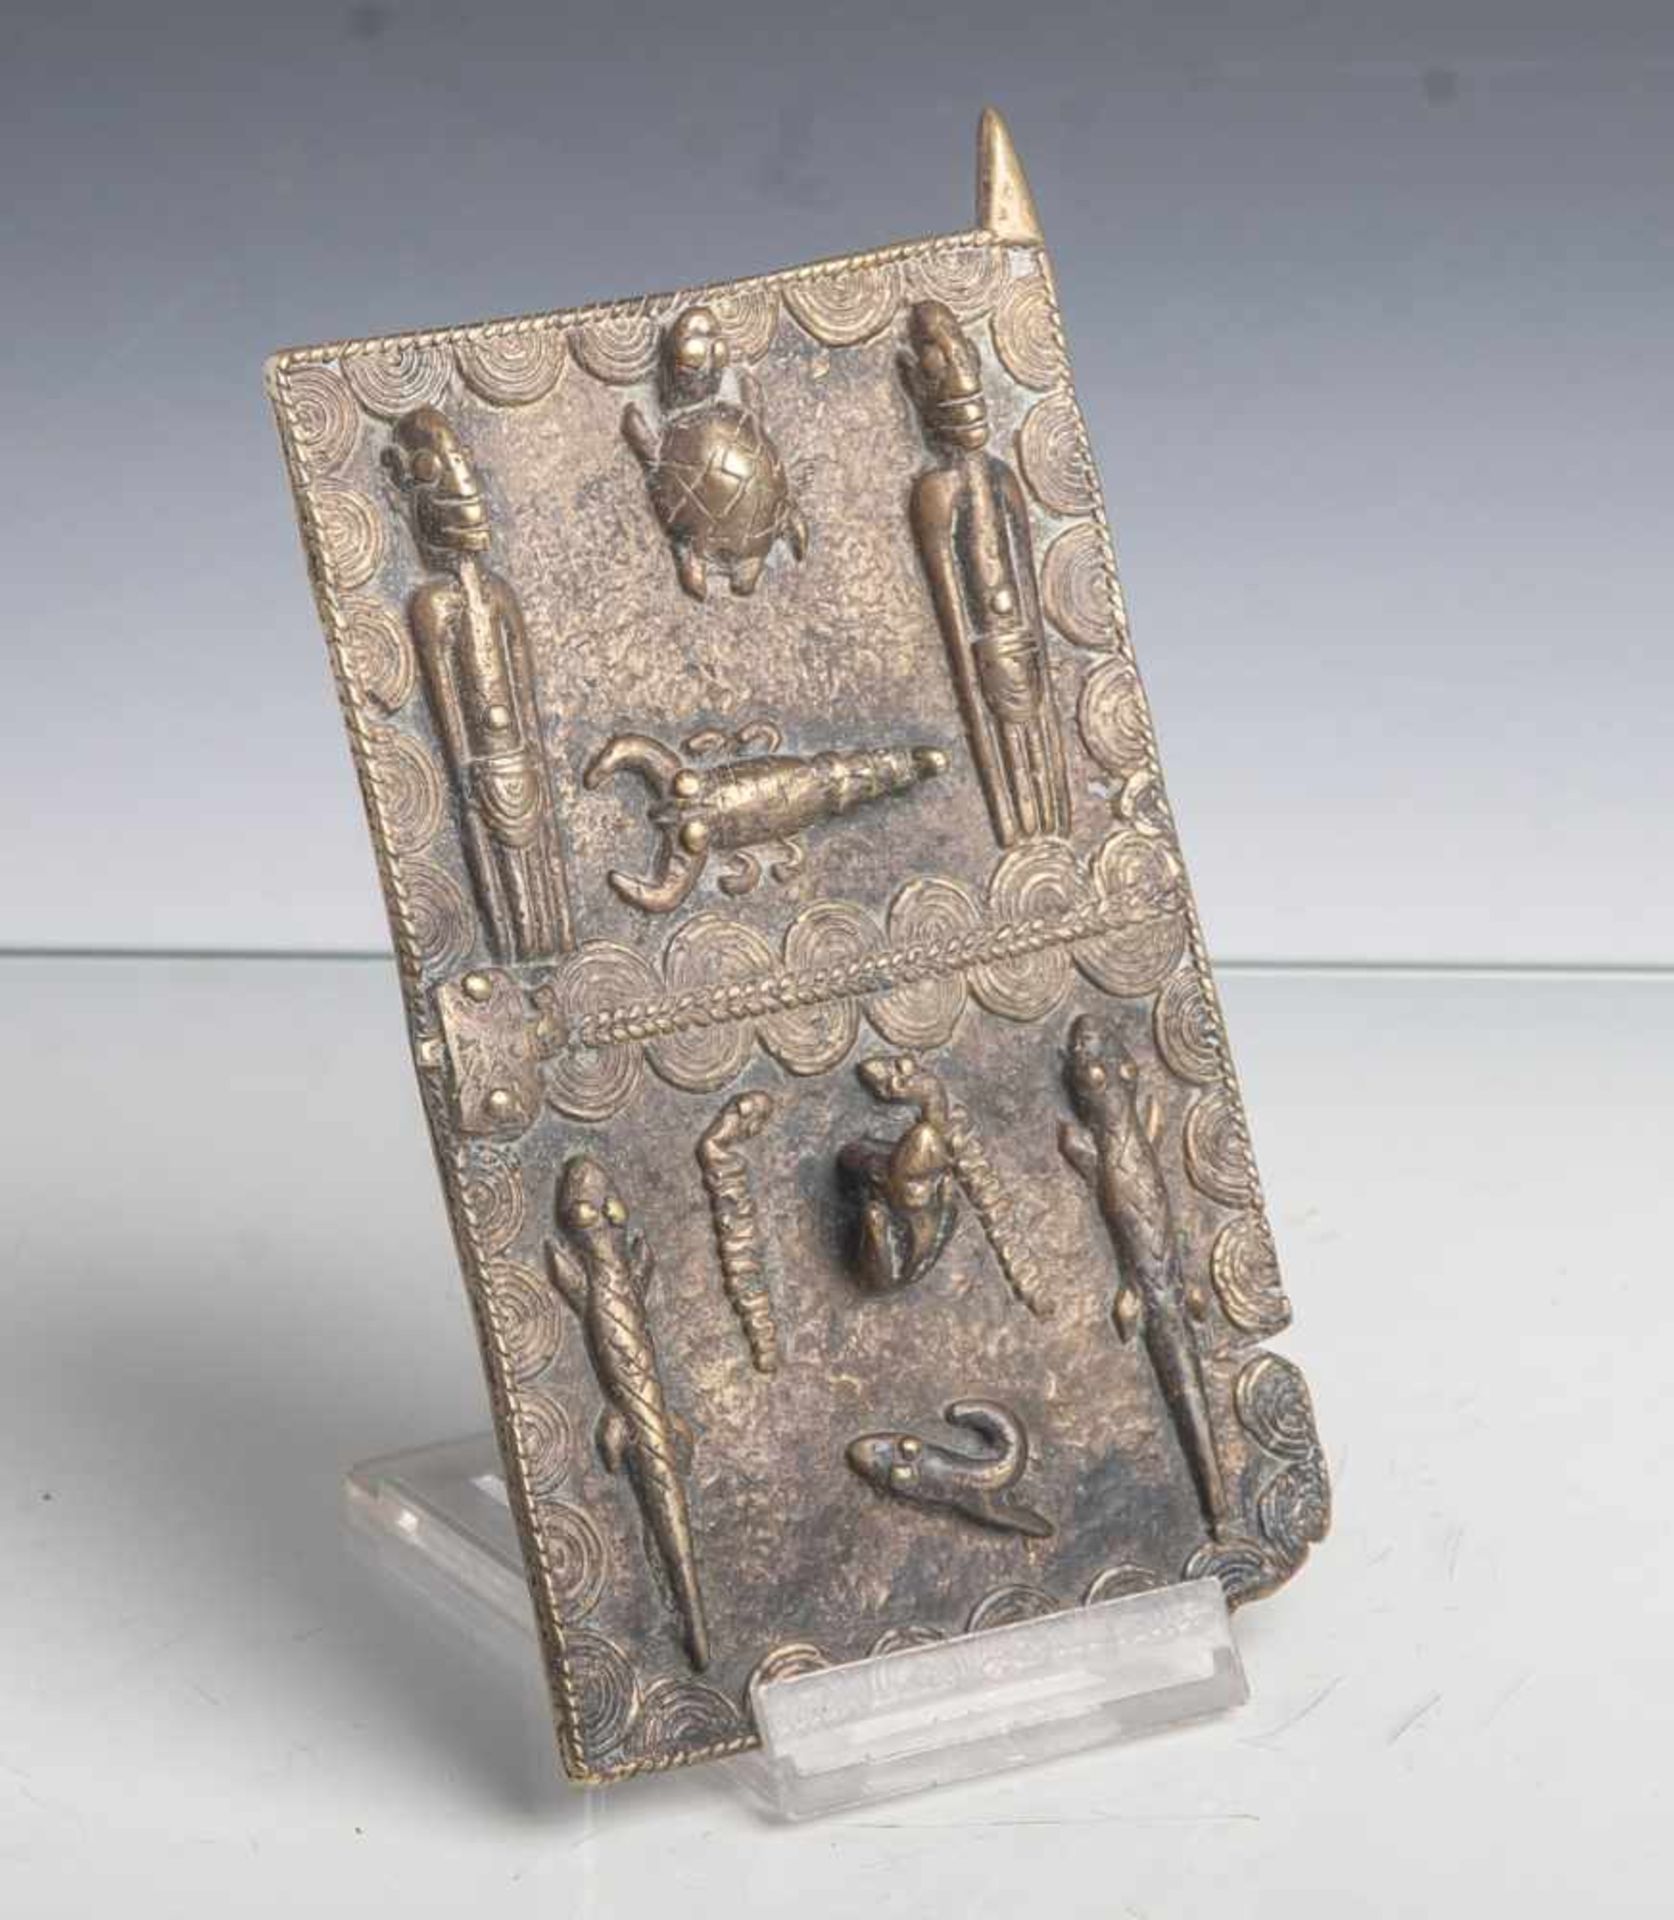 Tür eines Schreins (wohl Dogon, Afrika), Bronzeguss, 17 x 10 cm, Altergem. Zustand. Motivemit